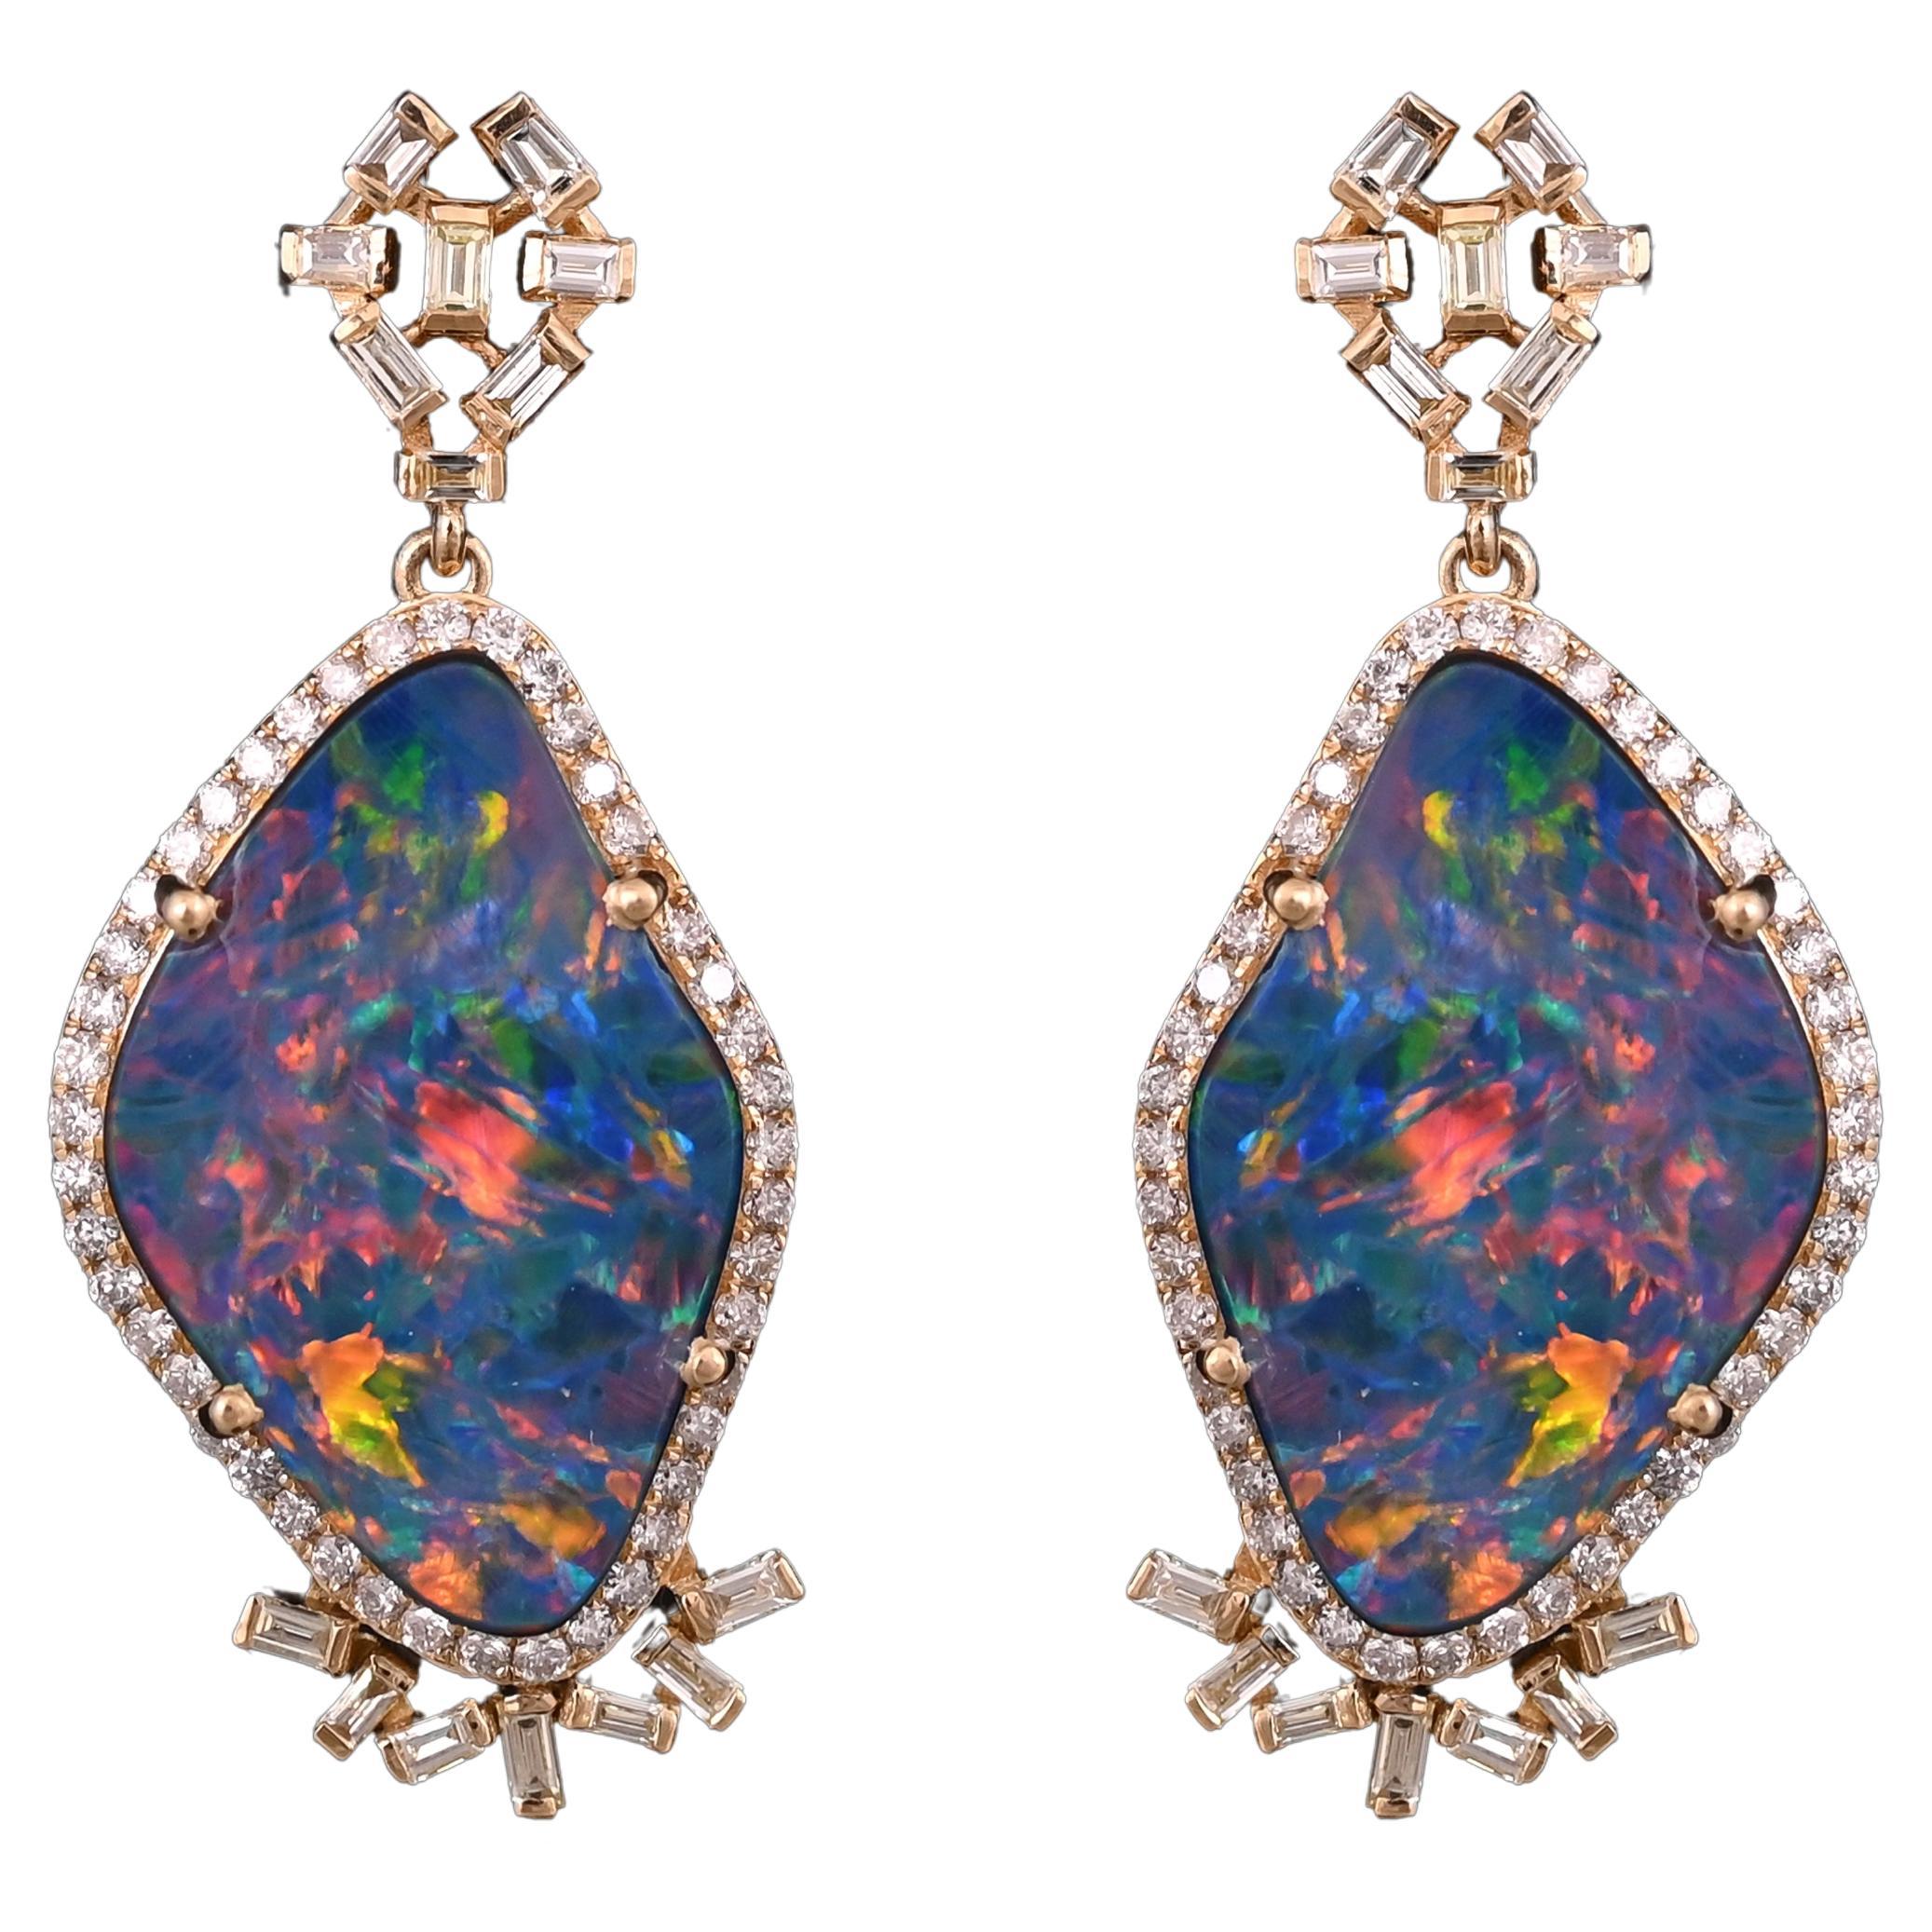 Set in 18K Gold, 10.64 carats Doublet Opal & Yellow Diamonds Chandelier Earrings